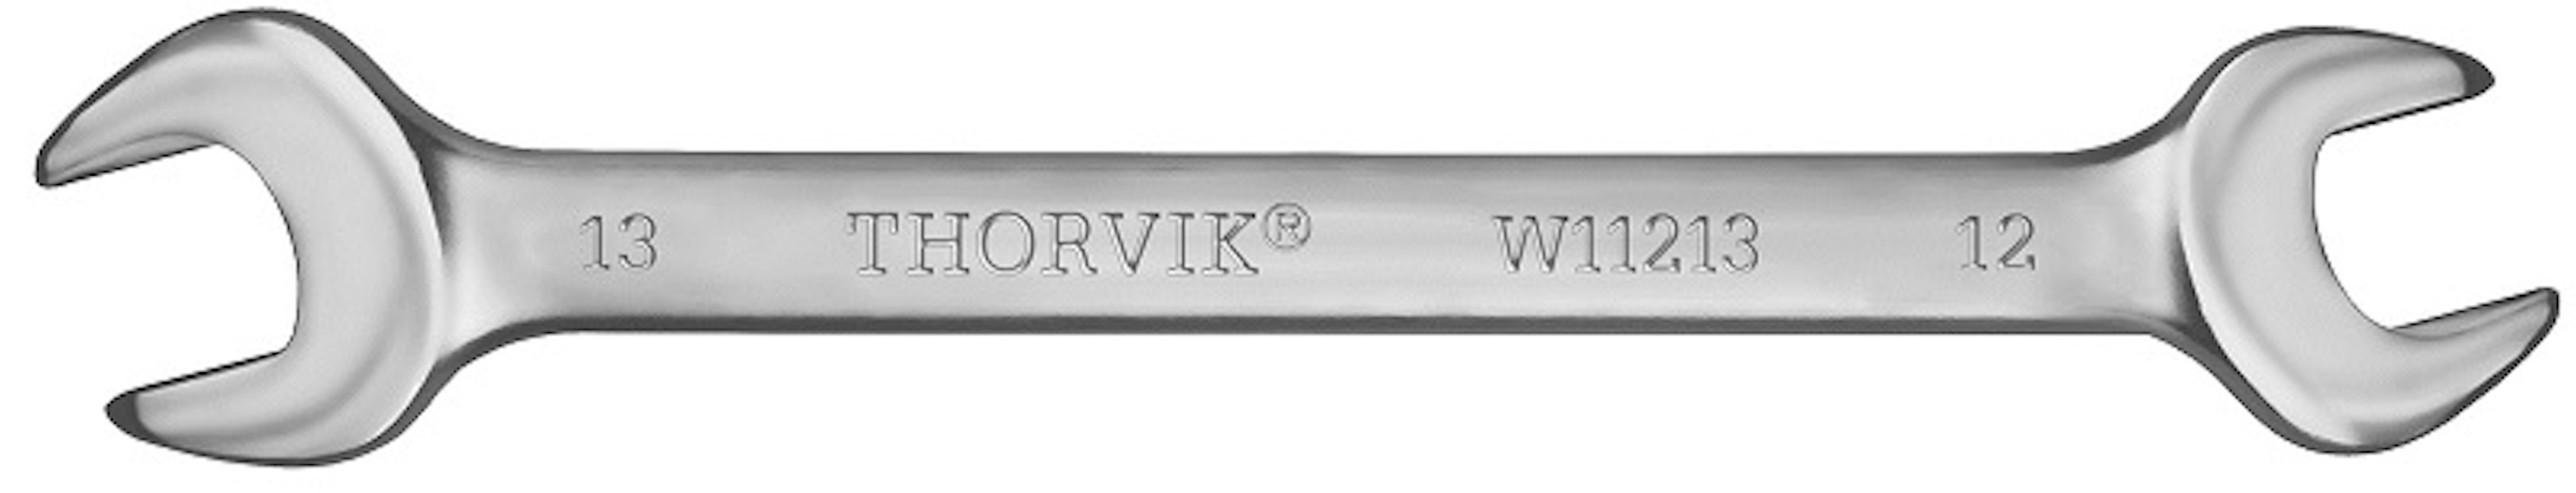 THORVIK W12123 Ключ гаечный рожковый серии ARC, 21х23 мм гаечный ключ сибин 27014 30 32 рожковый 30 x 32 мм